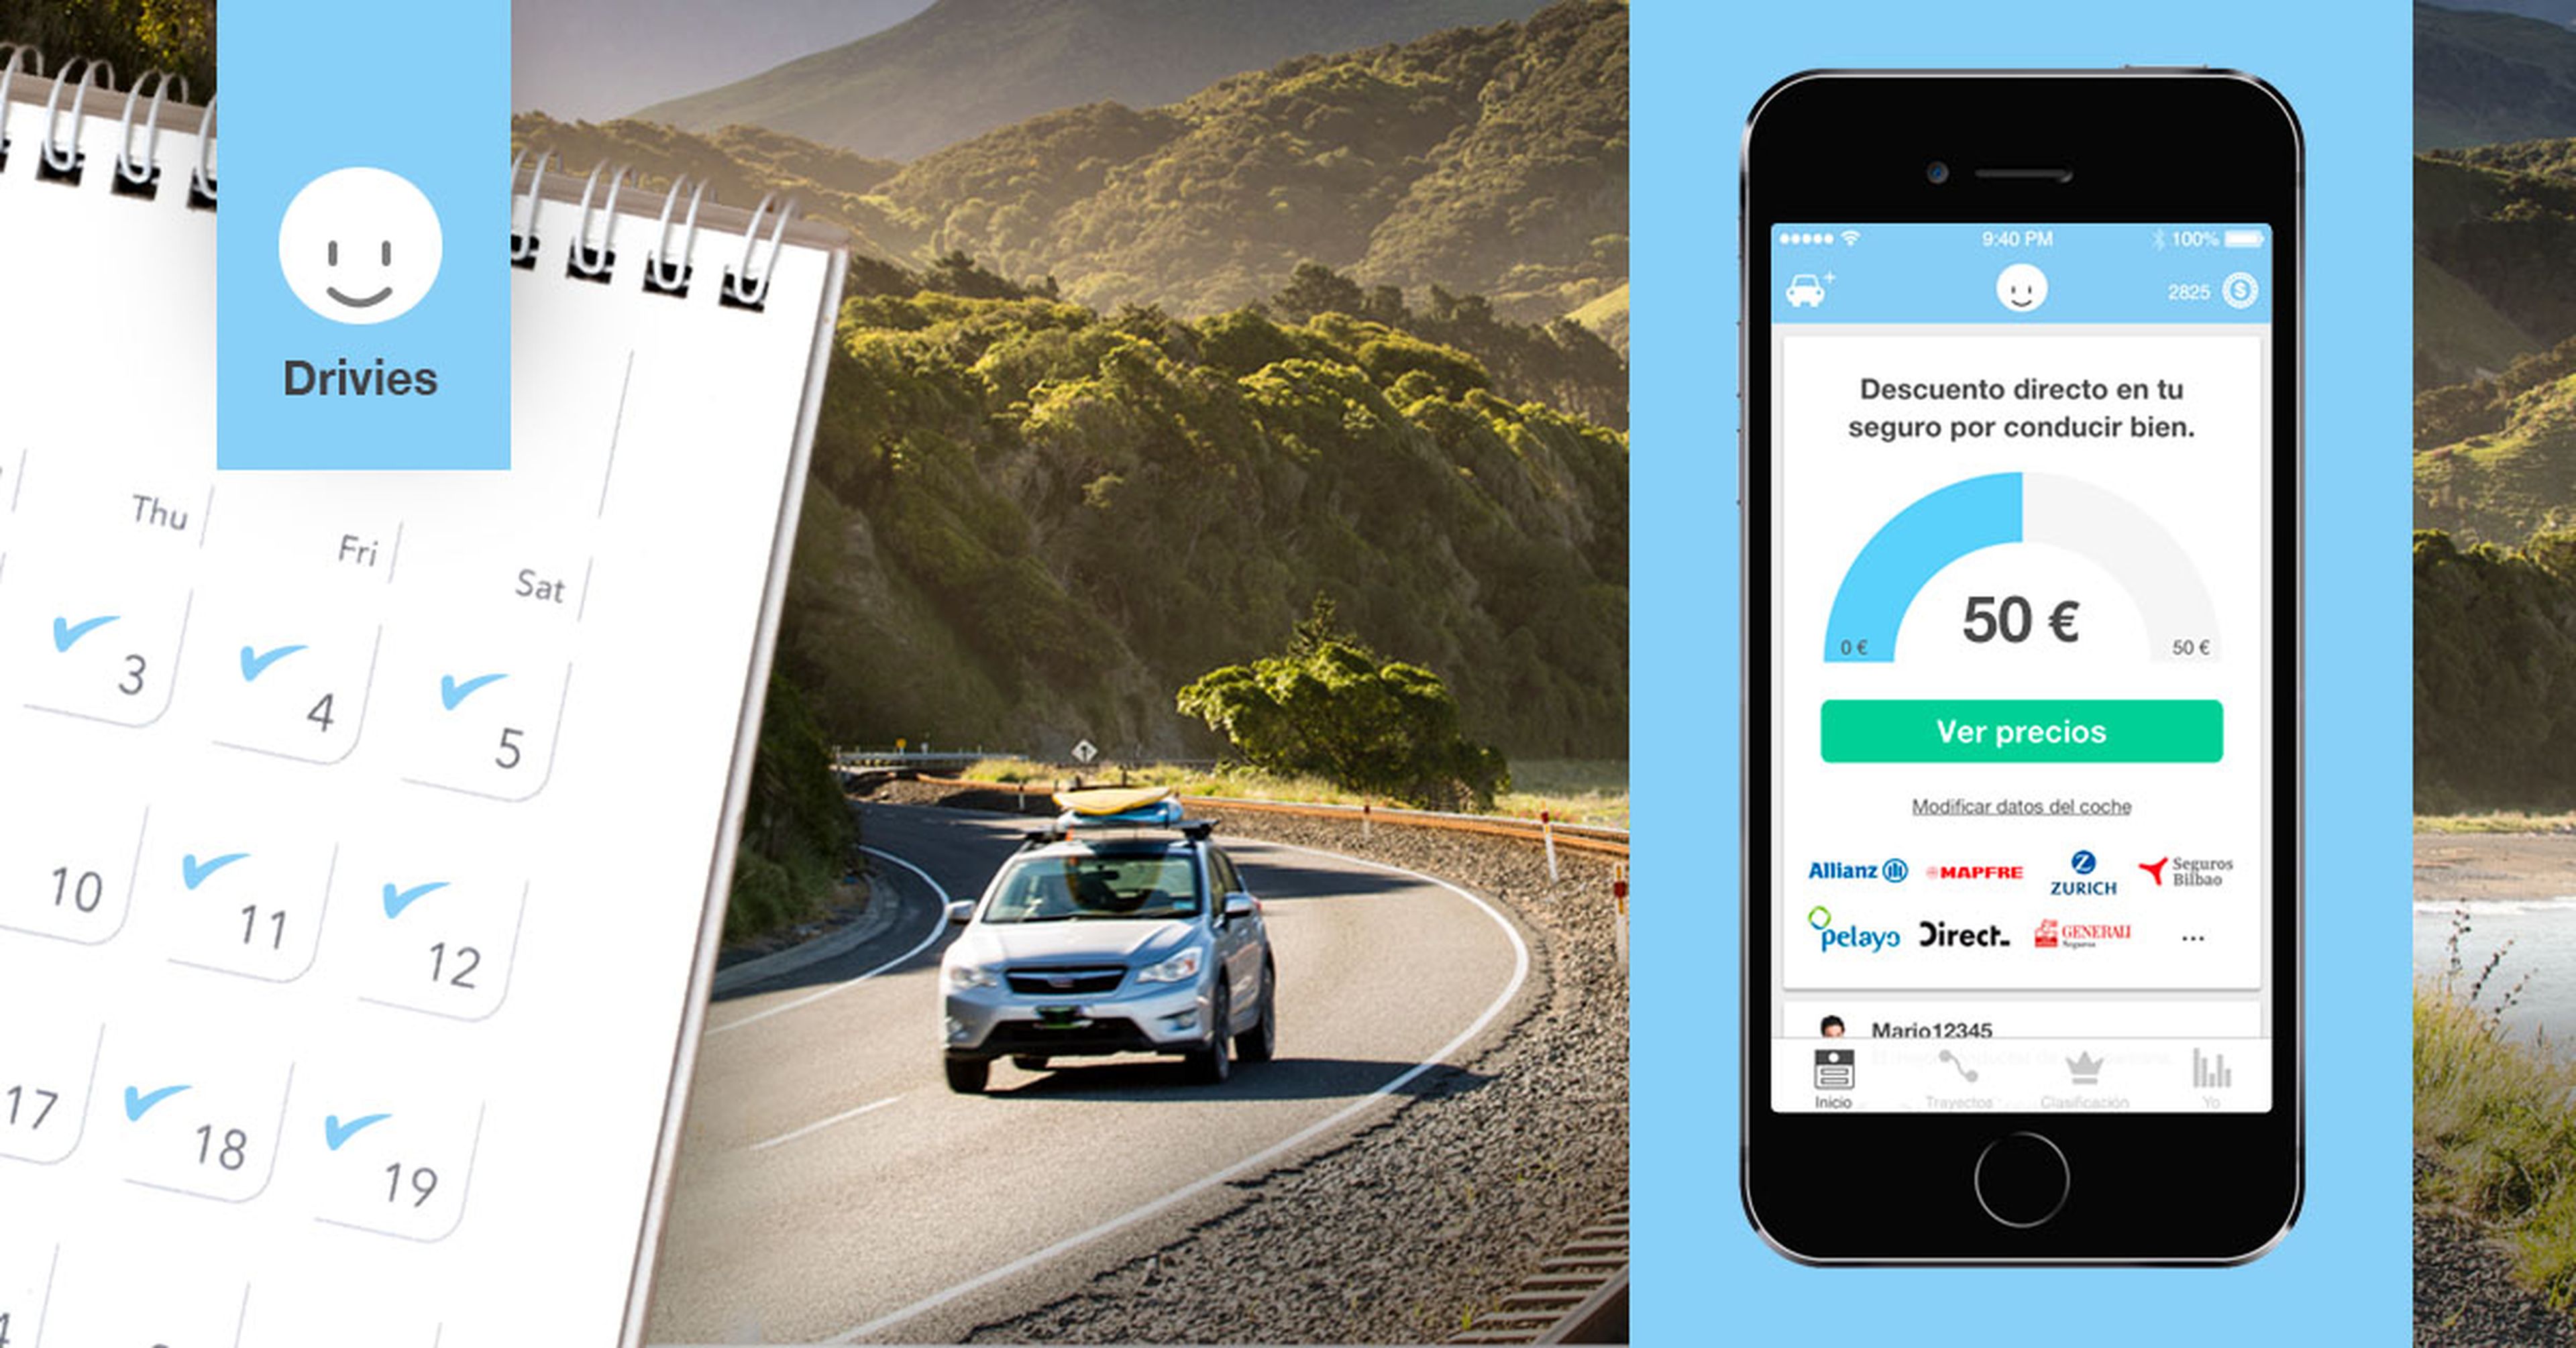 Con la app Drivies disfrutarás de múltiples descuentos a la vez que mejoras como conductor.